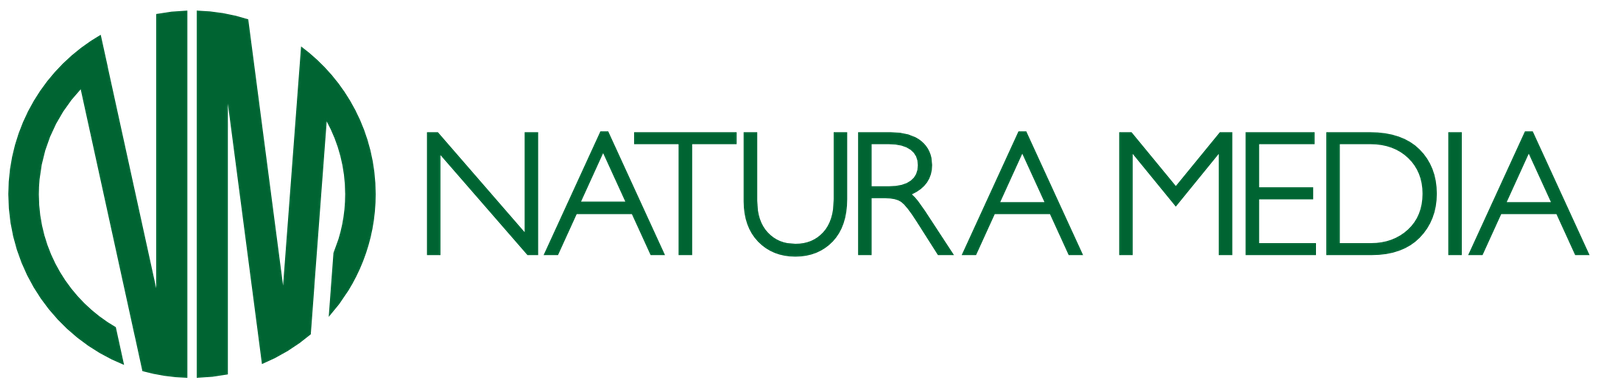 Natura Media